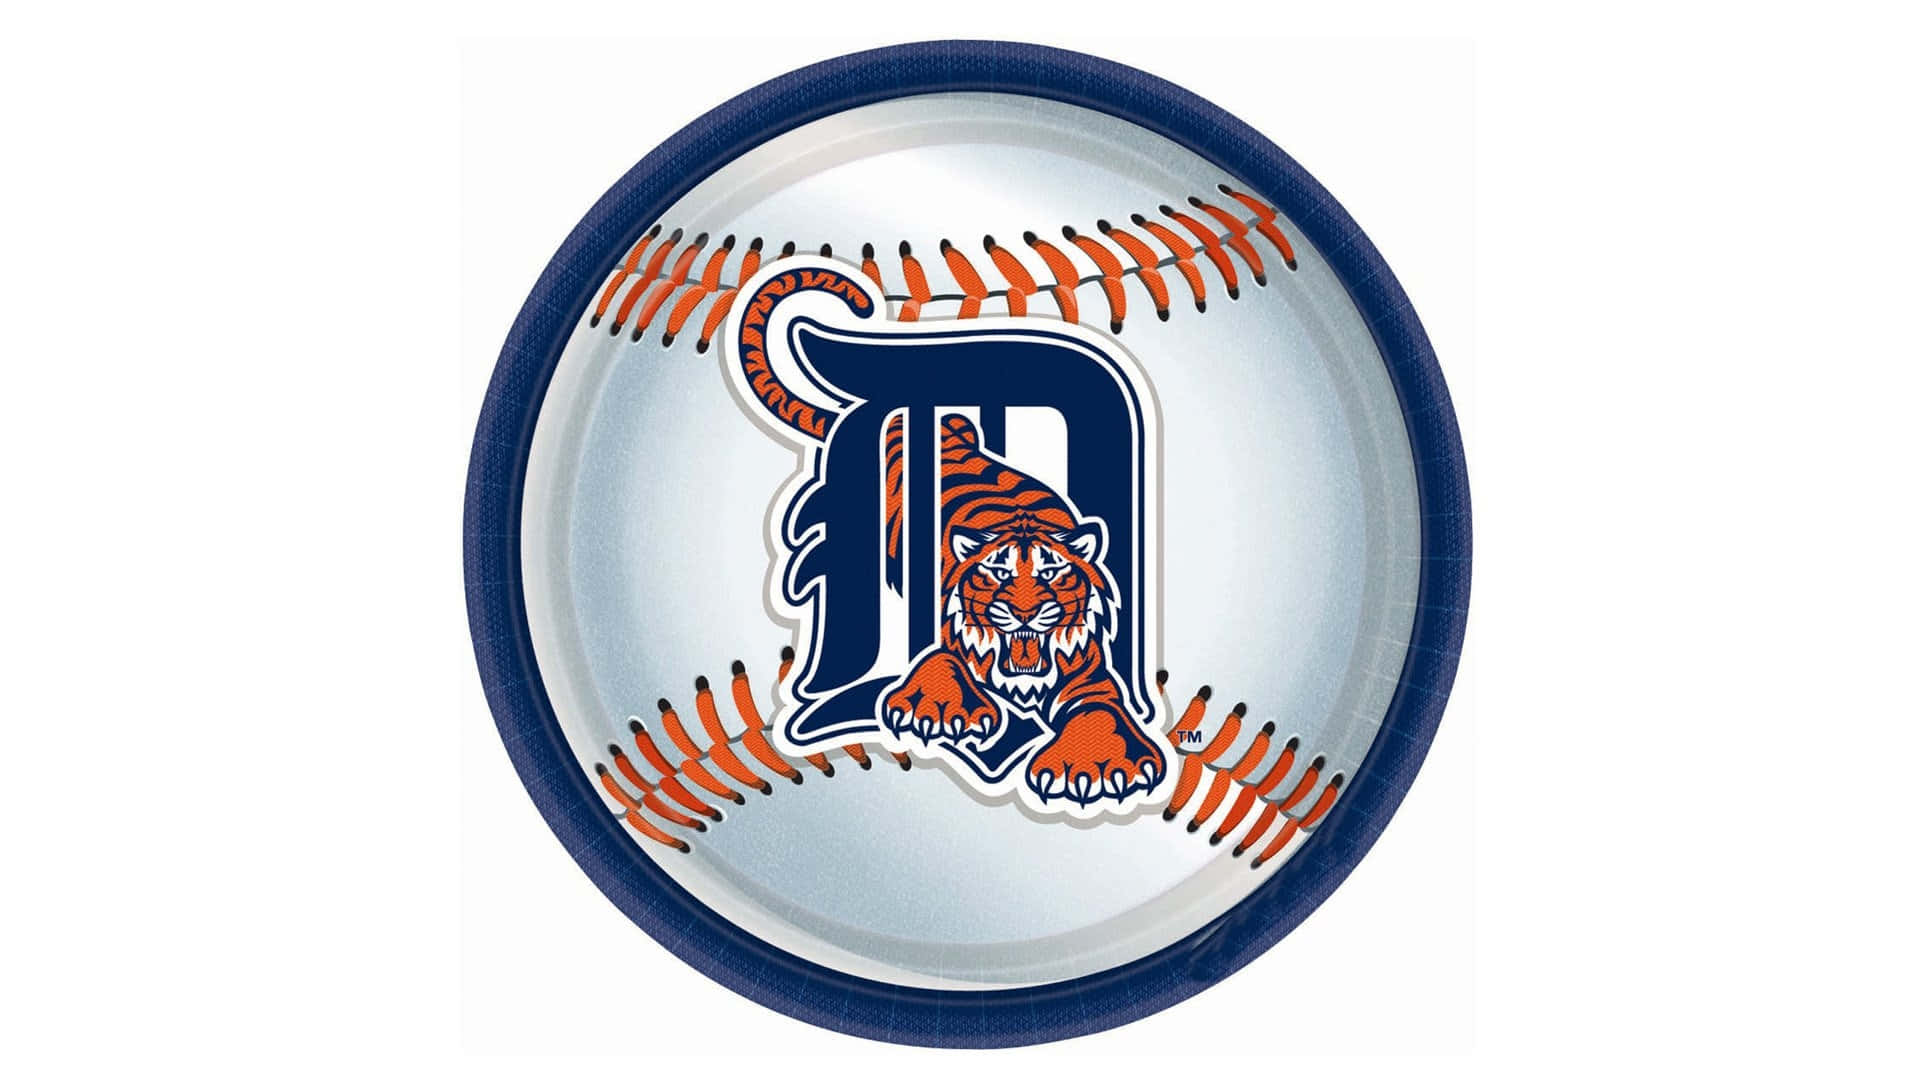 Detroittigers-logo Auf Einem Baseball. Wallpaper